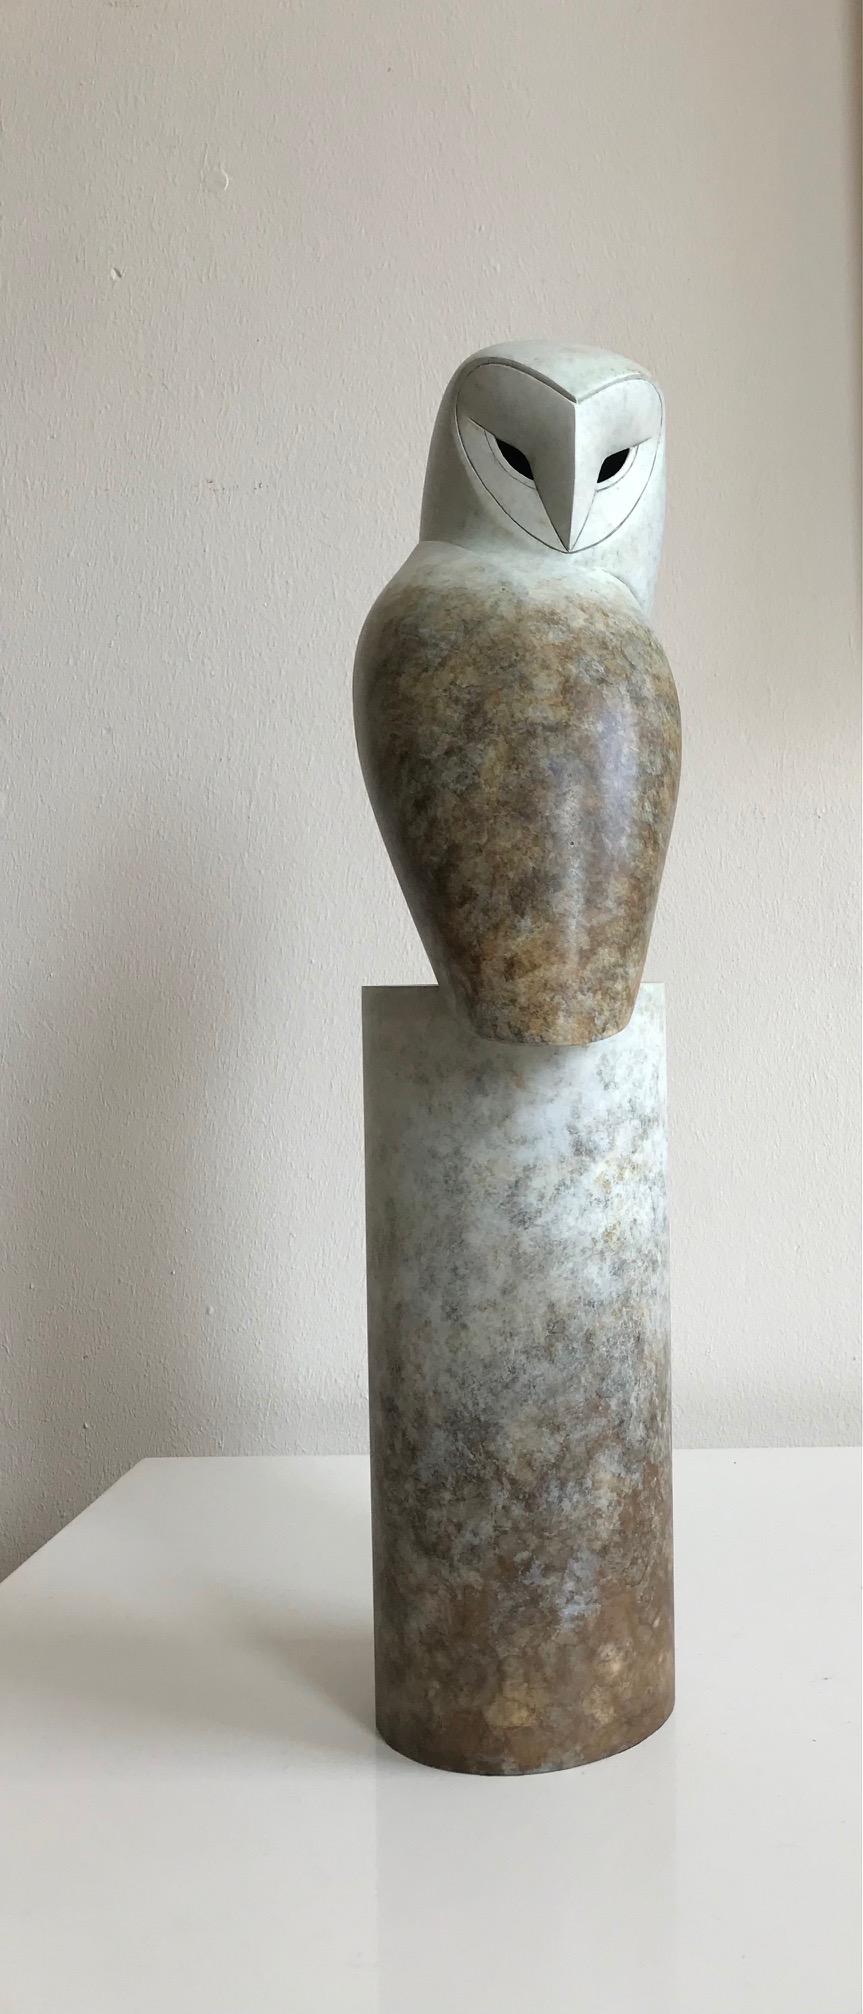 Figurative Sculpture Anthony Theakston - Portrait contemporain en bronze d'un hibou, chouette de grange, sculpture « Turnaround »